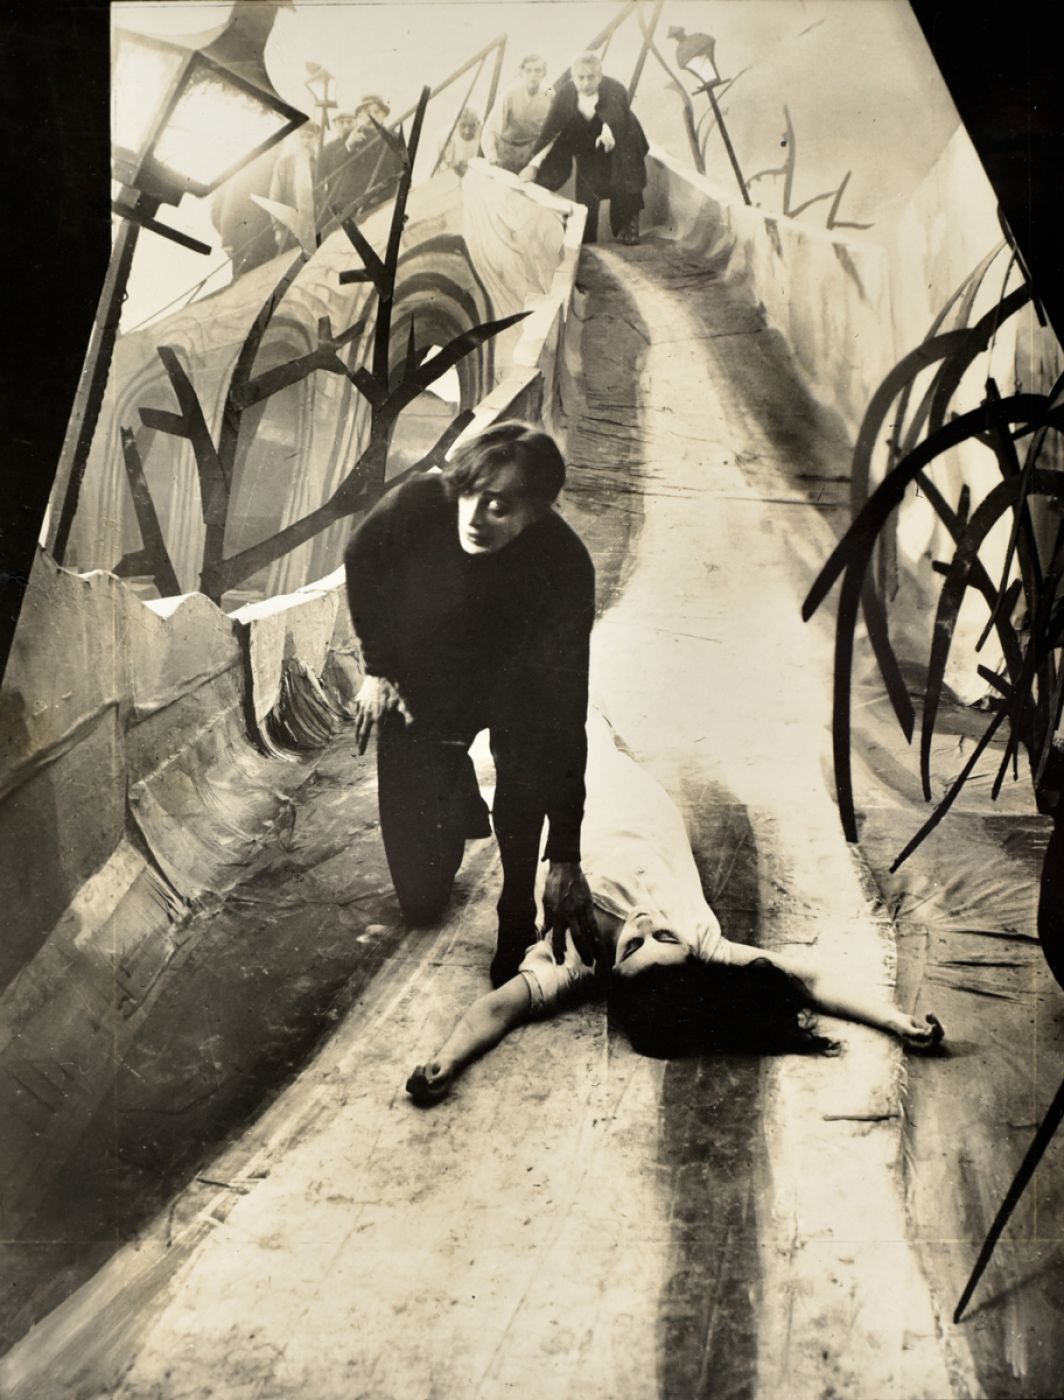 Willy Hameister, “Das Cabinet des Dr. Caligari by Robert Wiene”, 1919